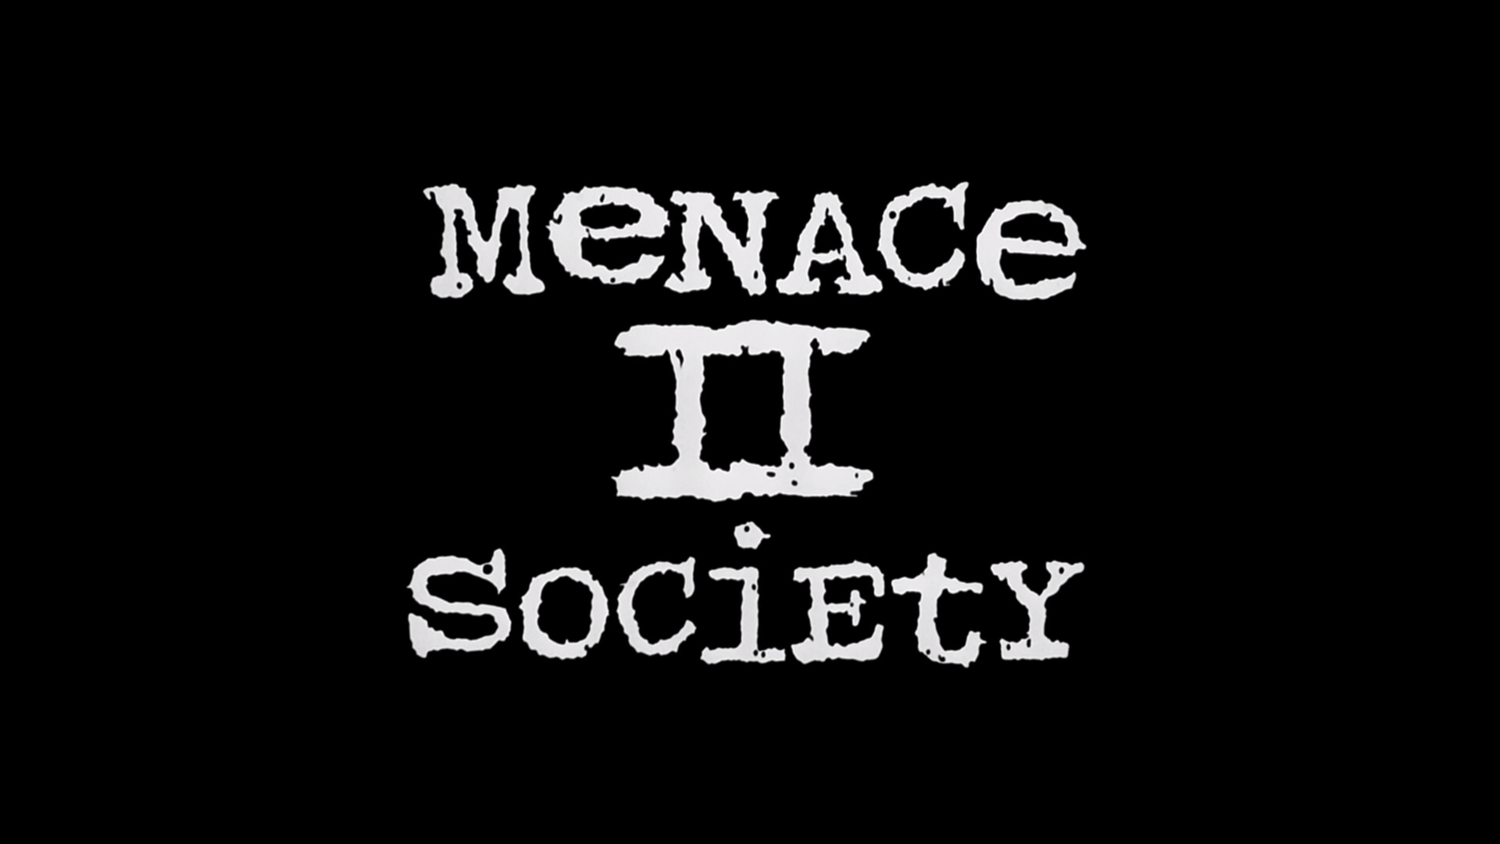 2 society. Menace надпись. Menace Society Помни. Menace to Society шрифт. Menace to Society 1993.